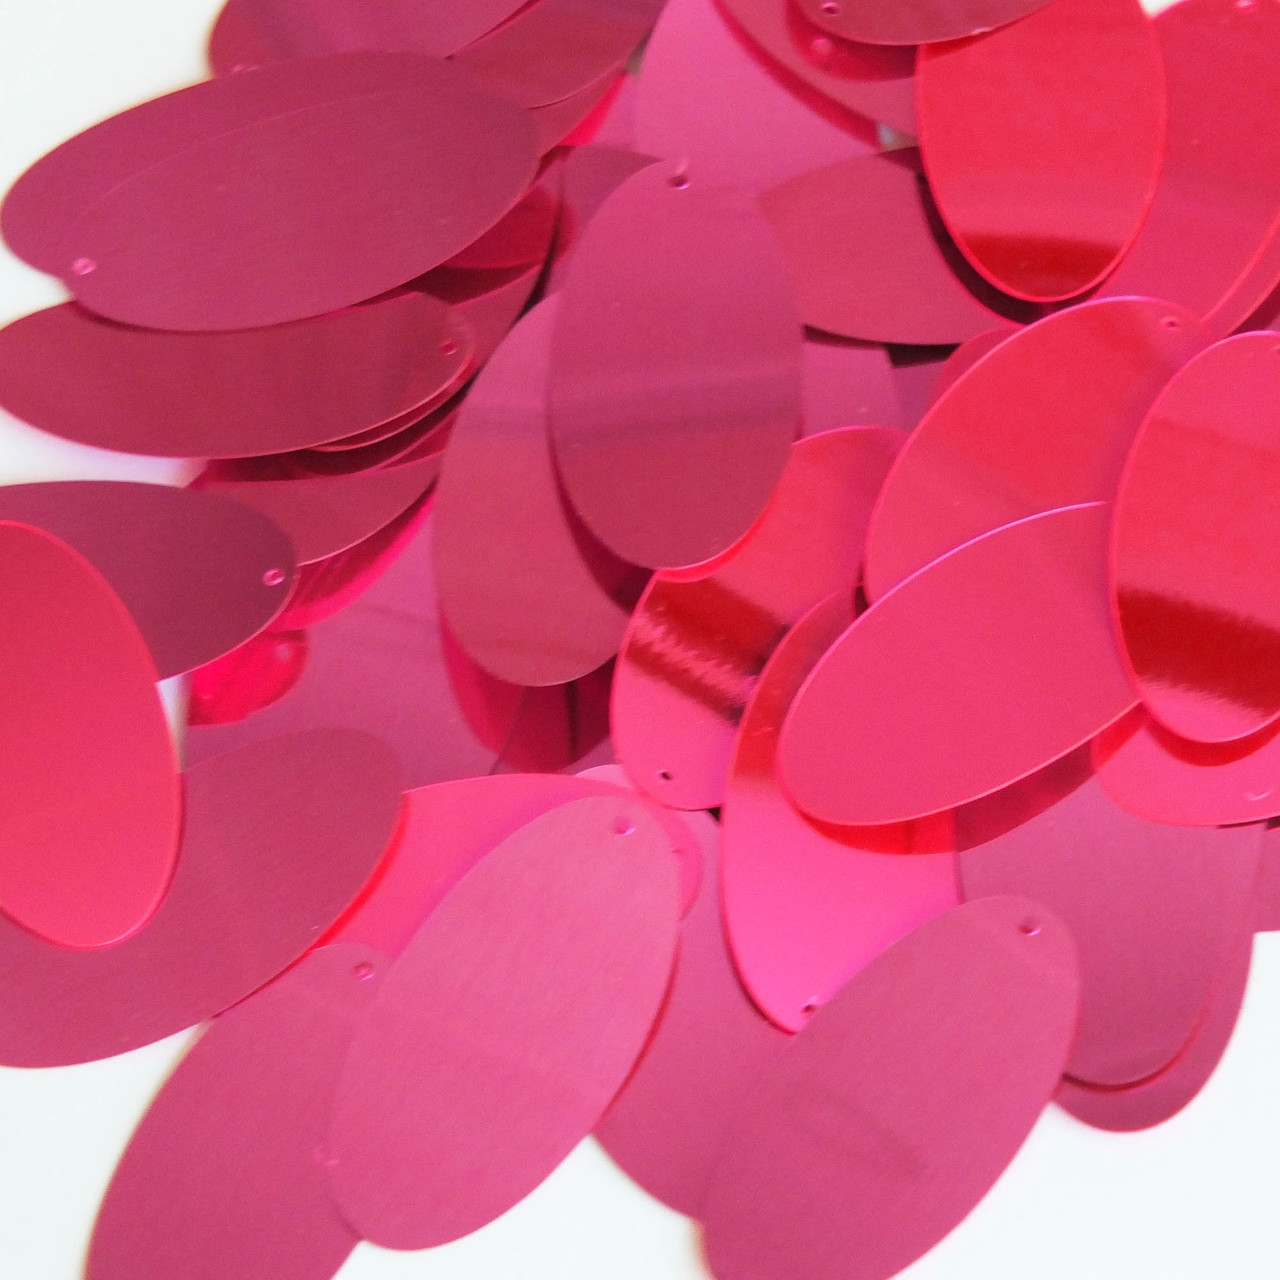 Oval Sequin 1.5" Hot Pink Metallic Fluorescent